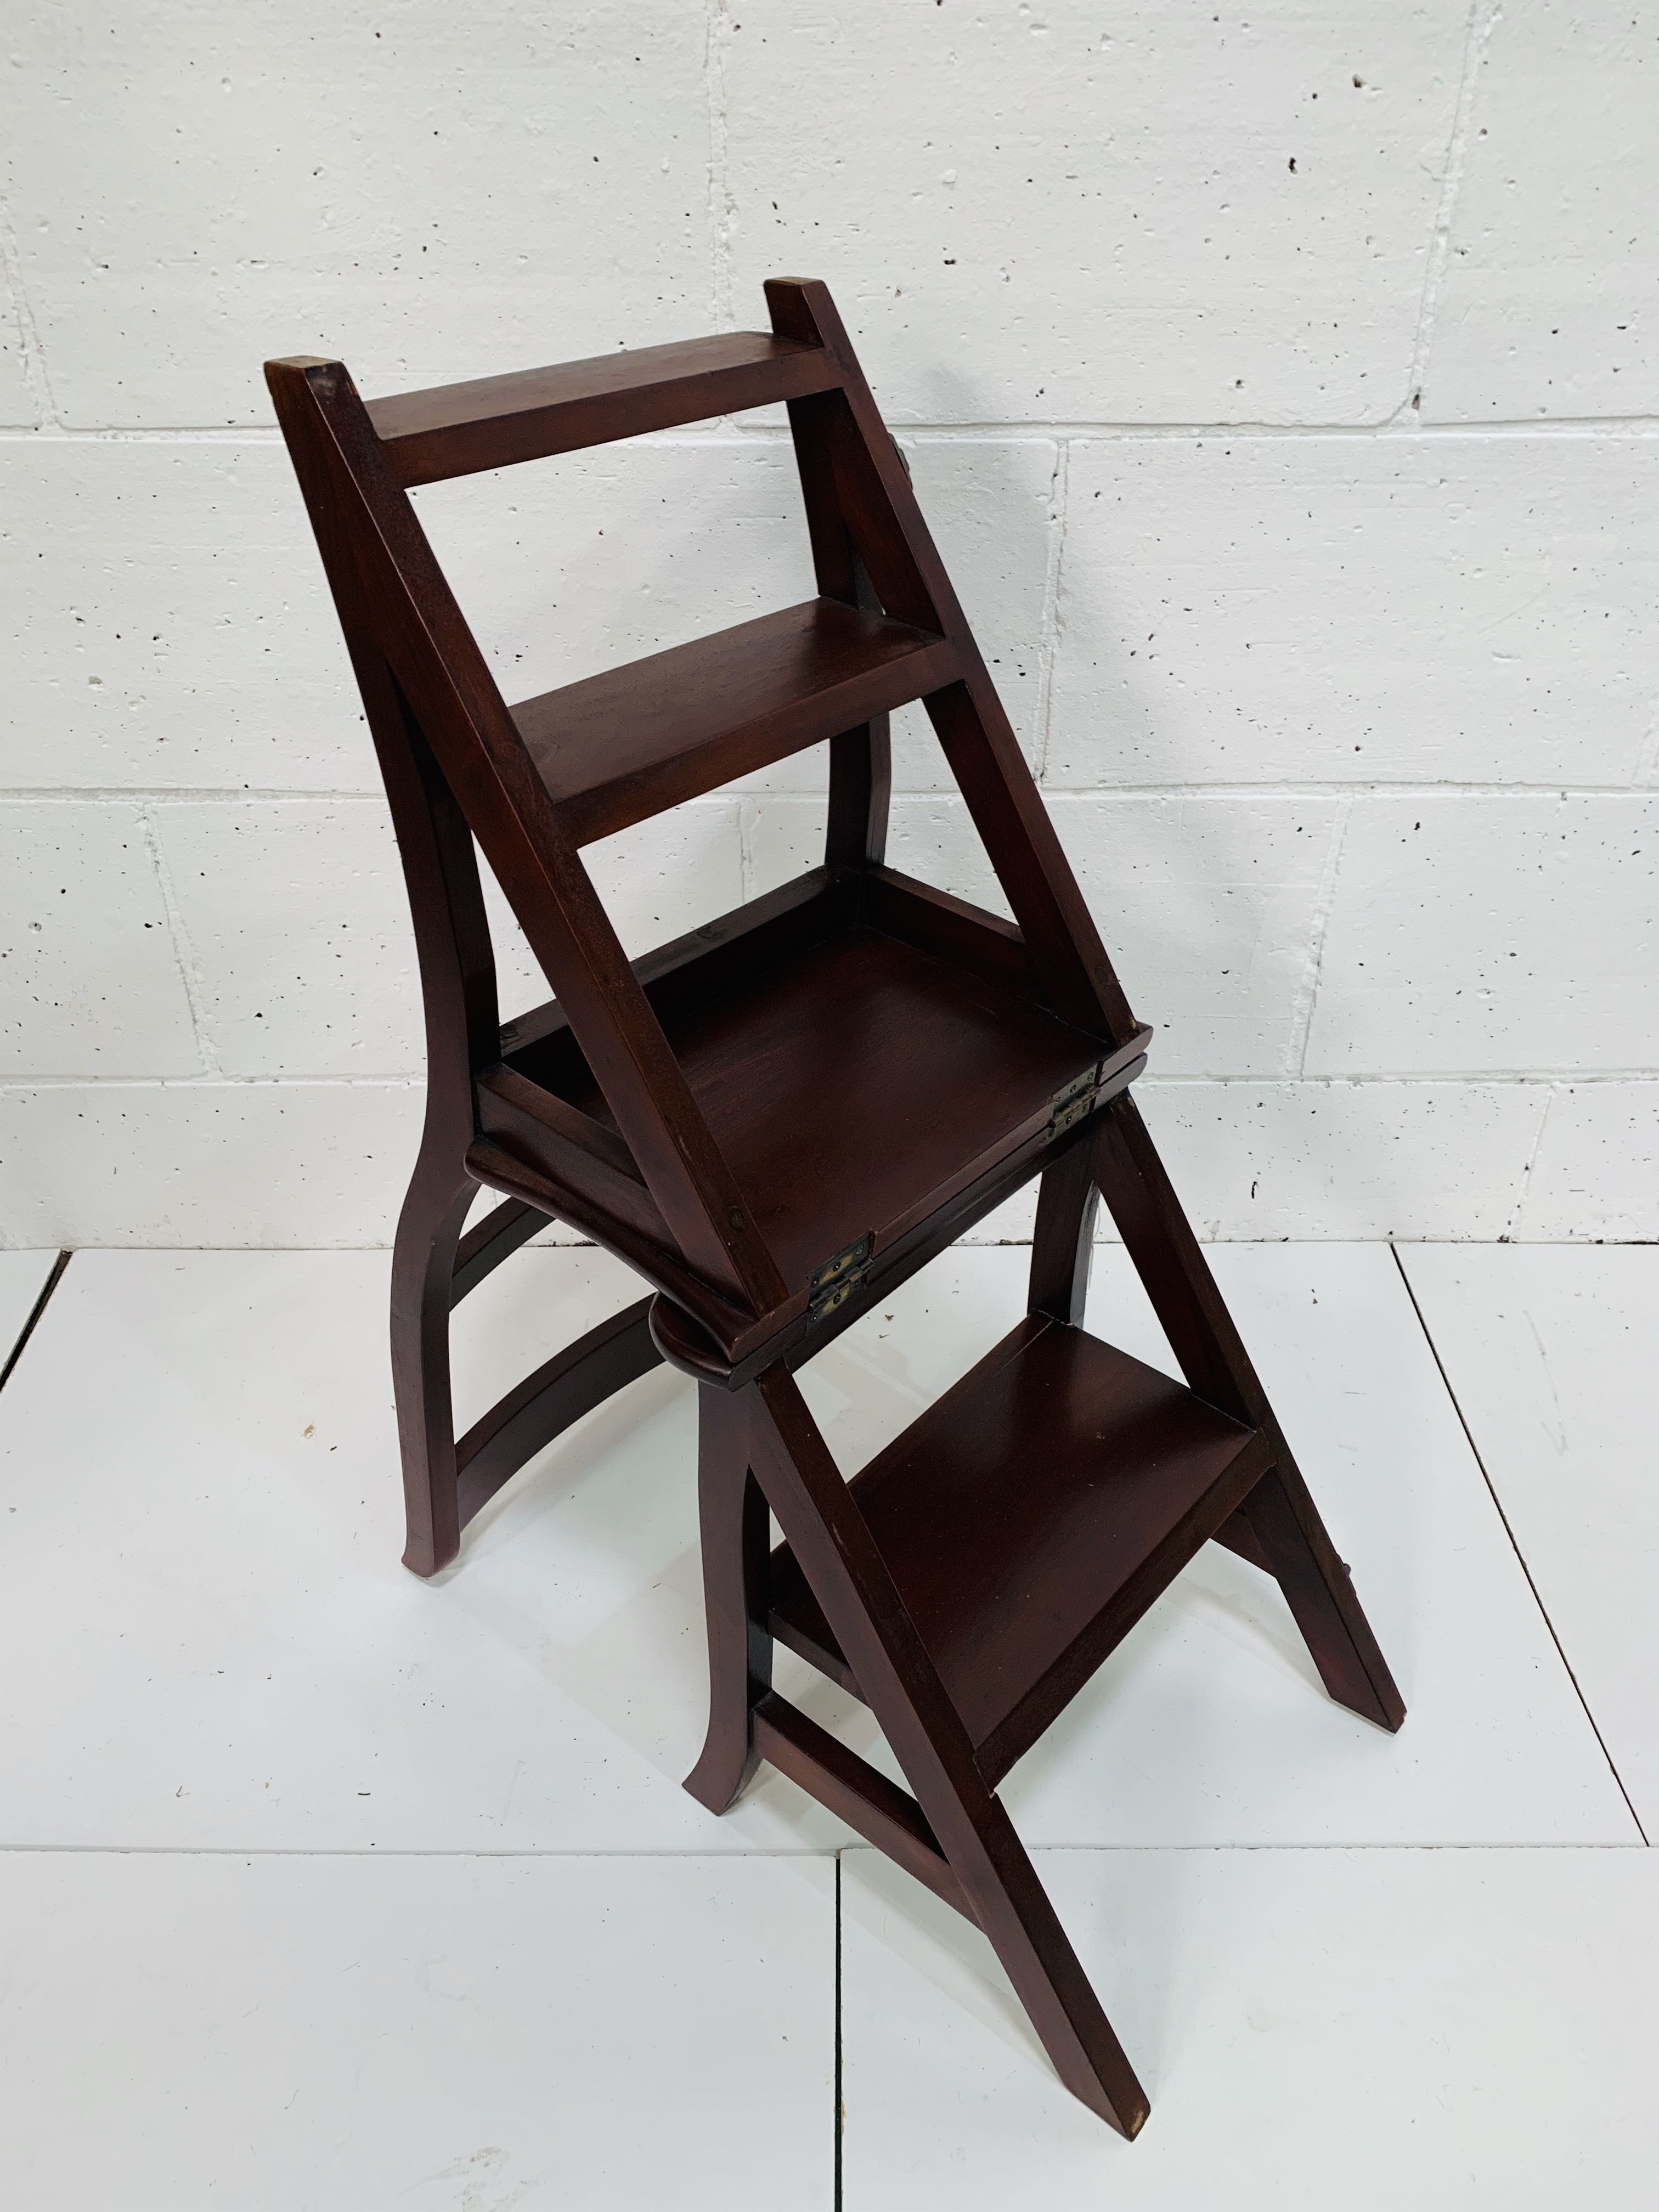 Mahogany metamorphic chair. - Image 2 of 2